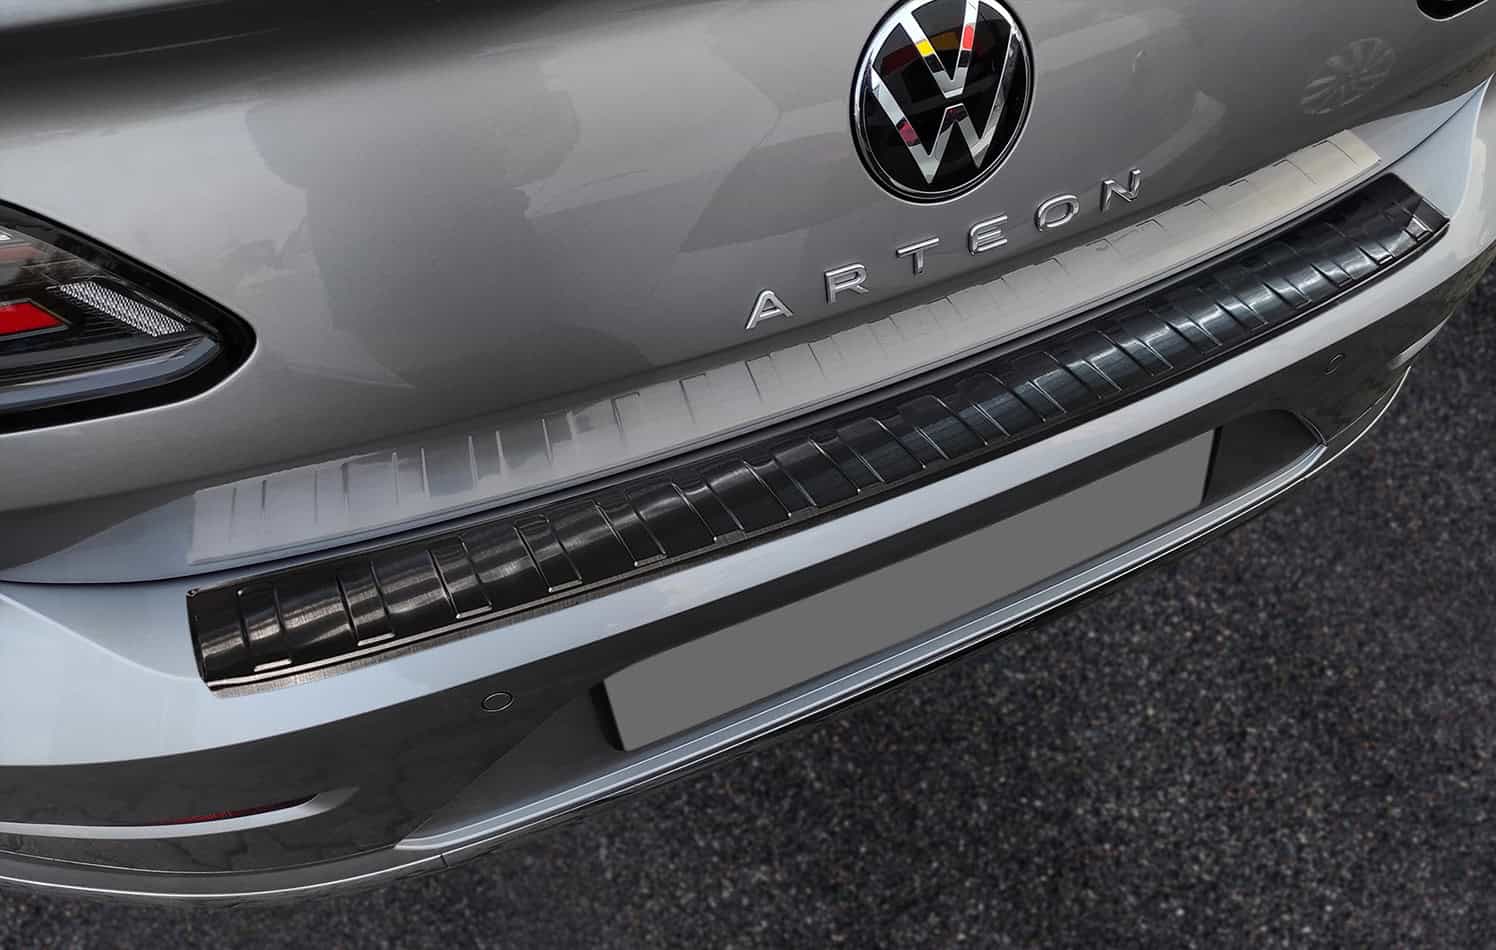 VW Zubehör für den Arteon und Arteon Shooting Brake